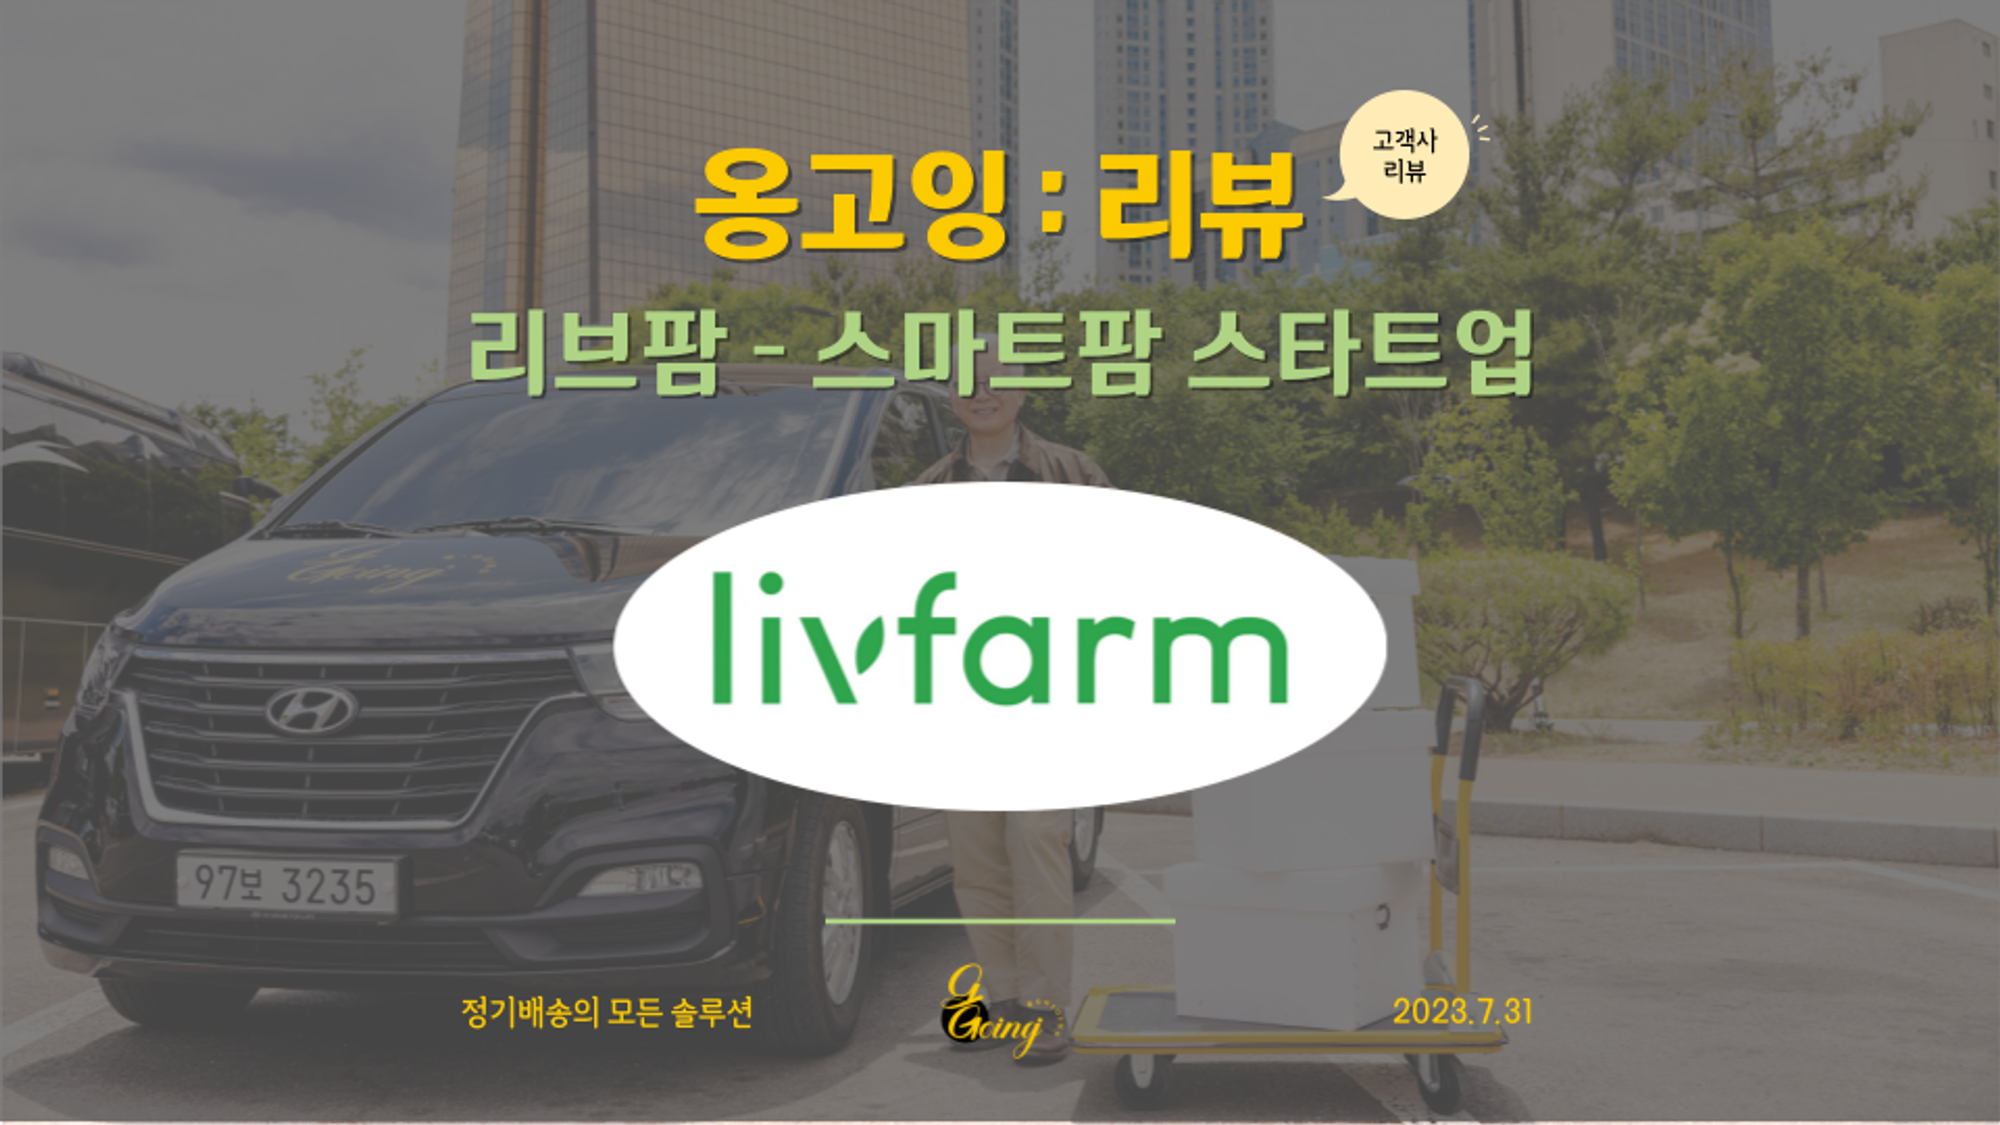 [옹고잉:리뷰]  '리브팜' 배송 서비스 개시부터 성장까지 옹고잉을 선택한 이유